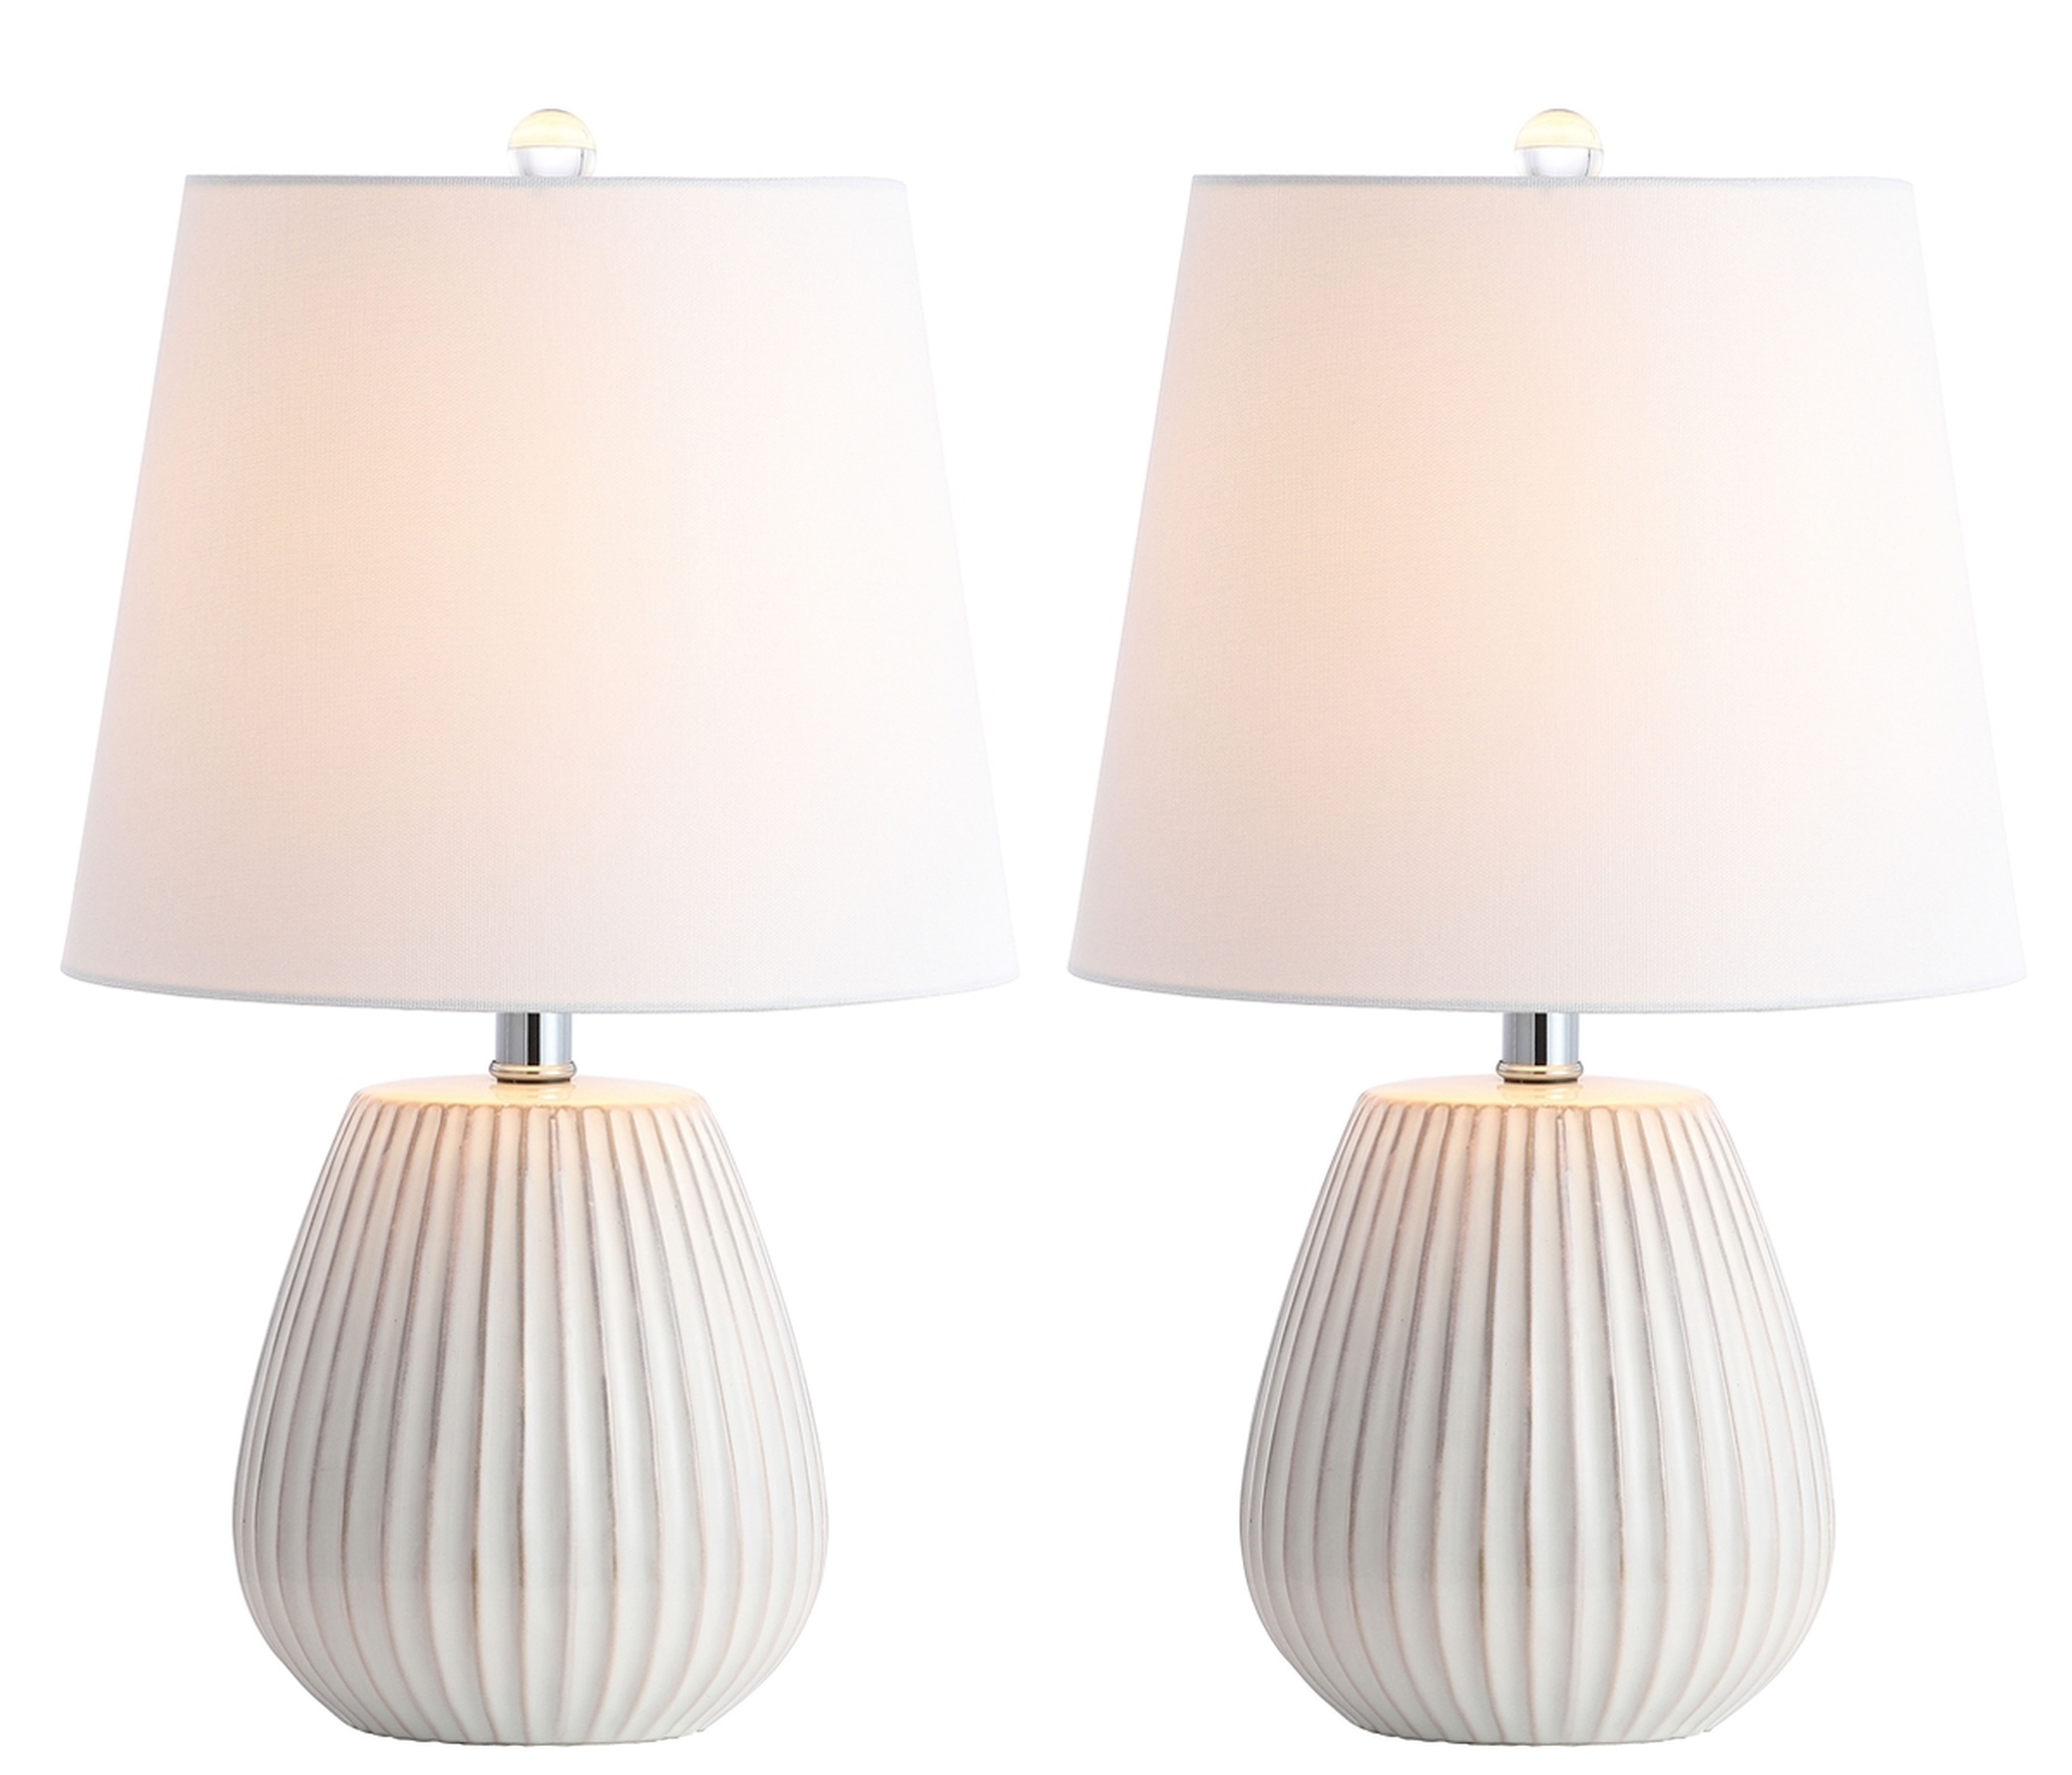 Kole Table Lamp - White - Set of 2 - Arlo Home